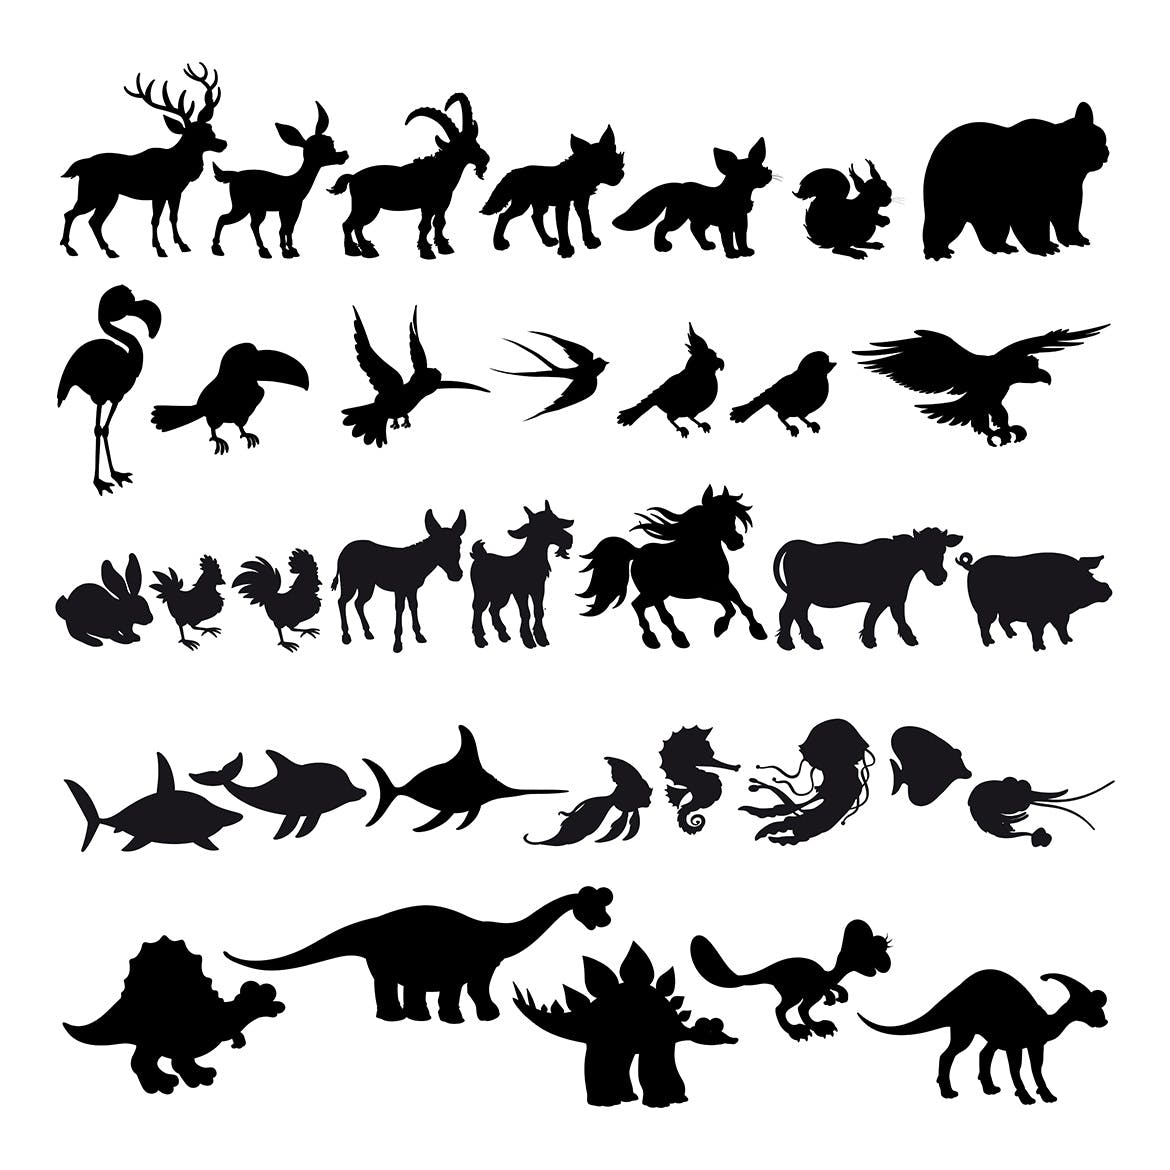 卡通动物剪影矢量插画素材库精选素材 Silhouettes of Cartoon Animals插图(1)